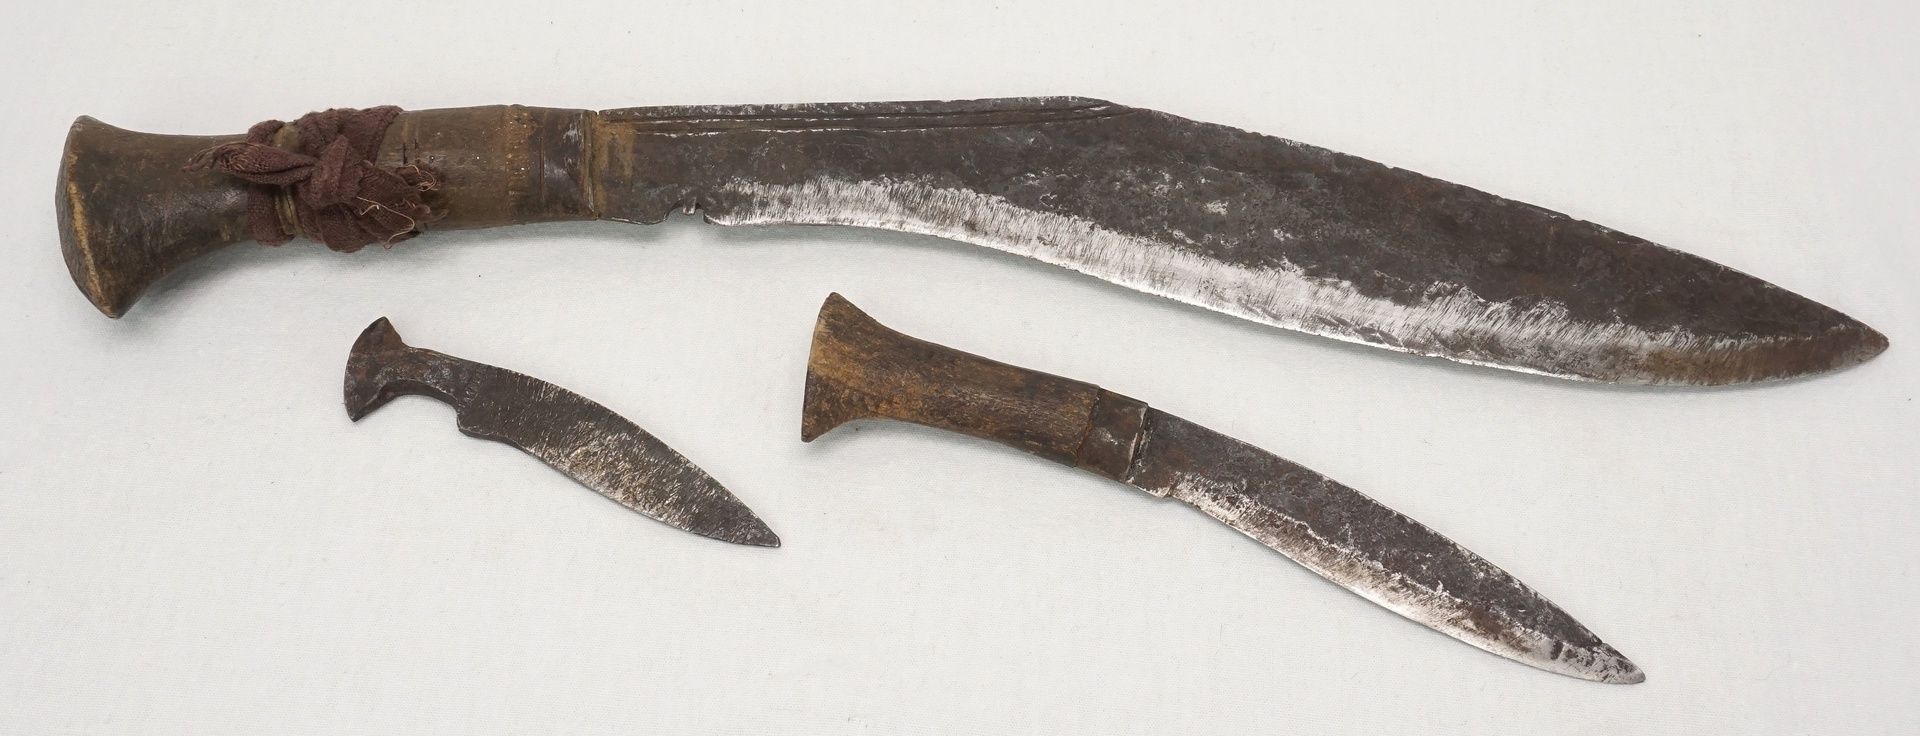 Großes Khukuri / Kukri Messer mit Beimessern und Scheide, Nepal, um 1900schwere Eisenklinge mit - Image 2 of 3